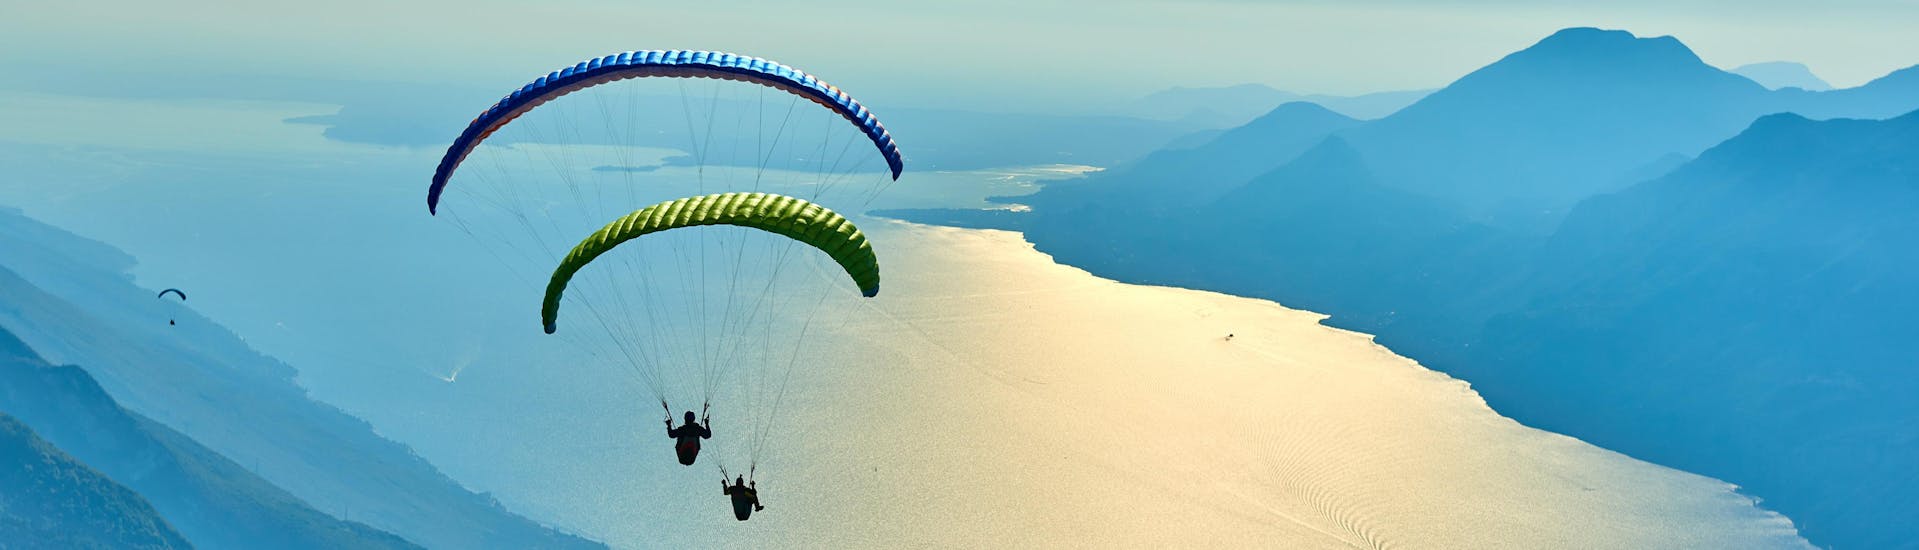 Un entusiasmado participante en un vuelo en parapente biplaza sobrevuela Malcesine, uno de los sitios más populares para volar en parapente.